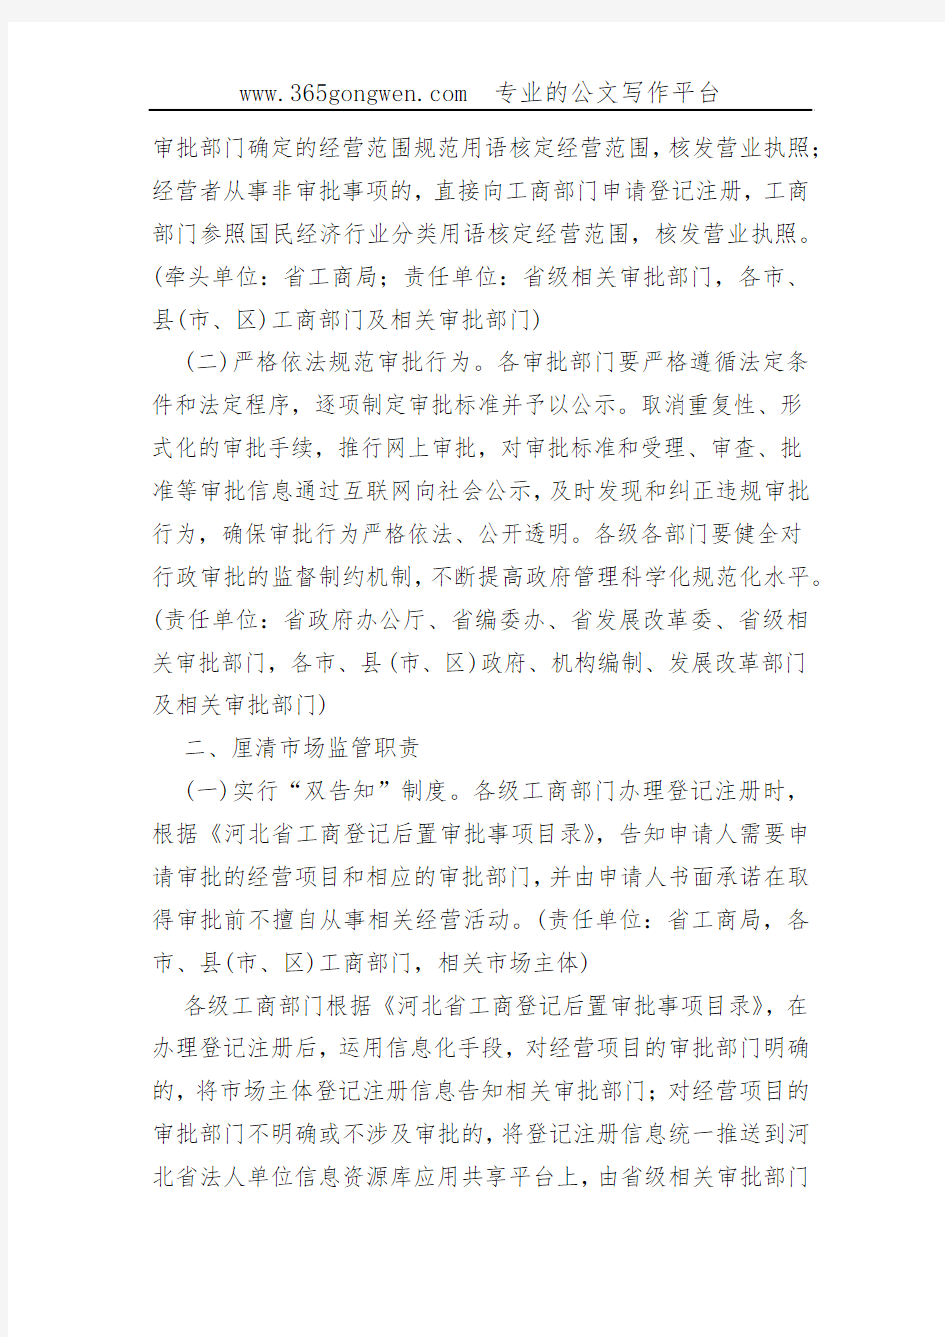 【工商意见】河北省人民政府关于“先照后证”改革后加强事中事后监管的实施意见